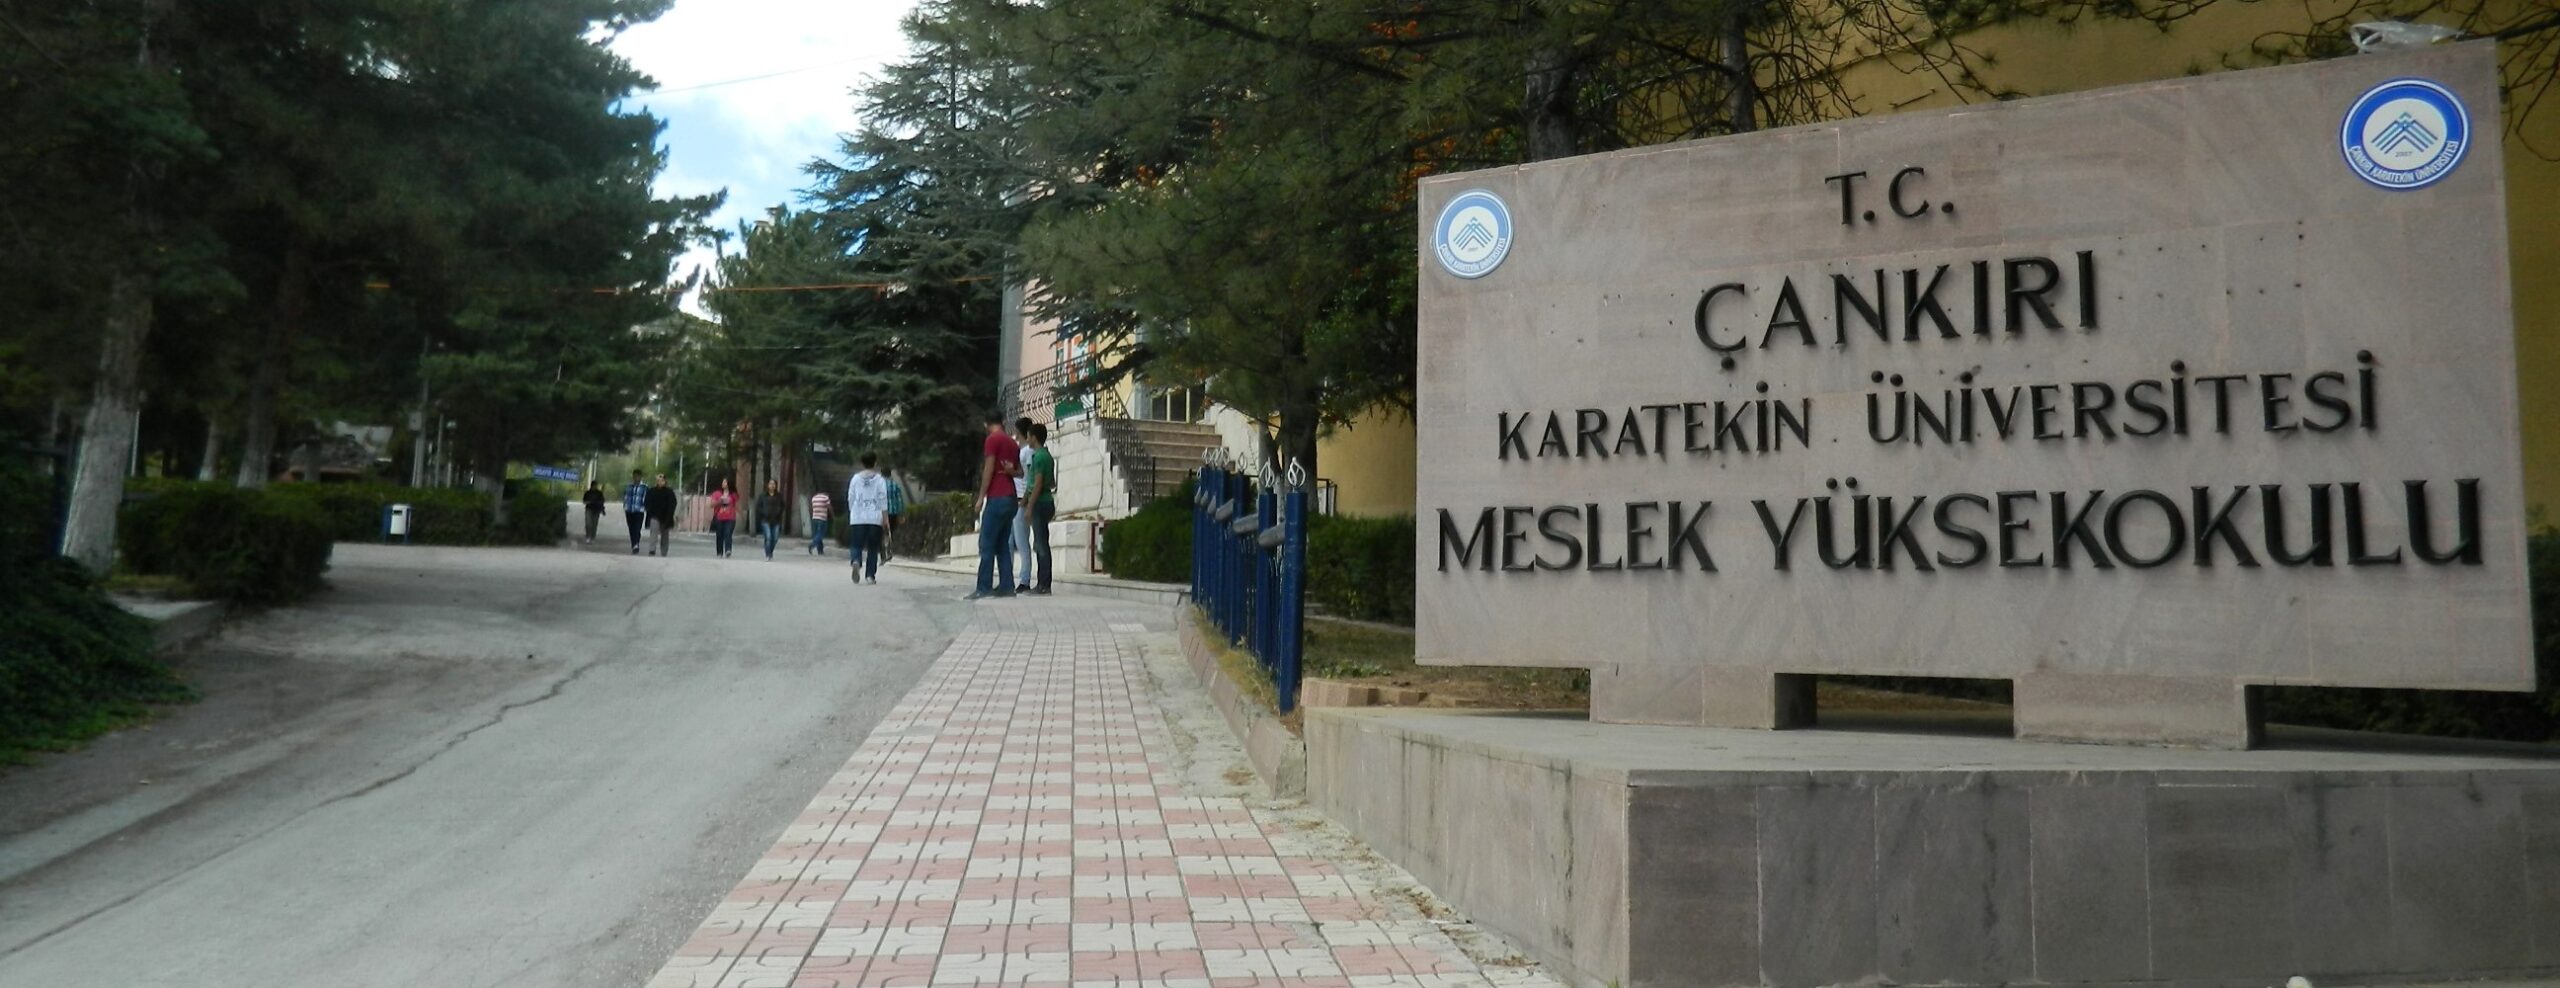 cankiri universitesi find and study 4 scaled - Çankırı Karatekin Üniversitesi